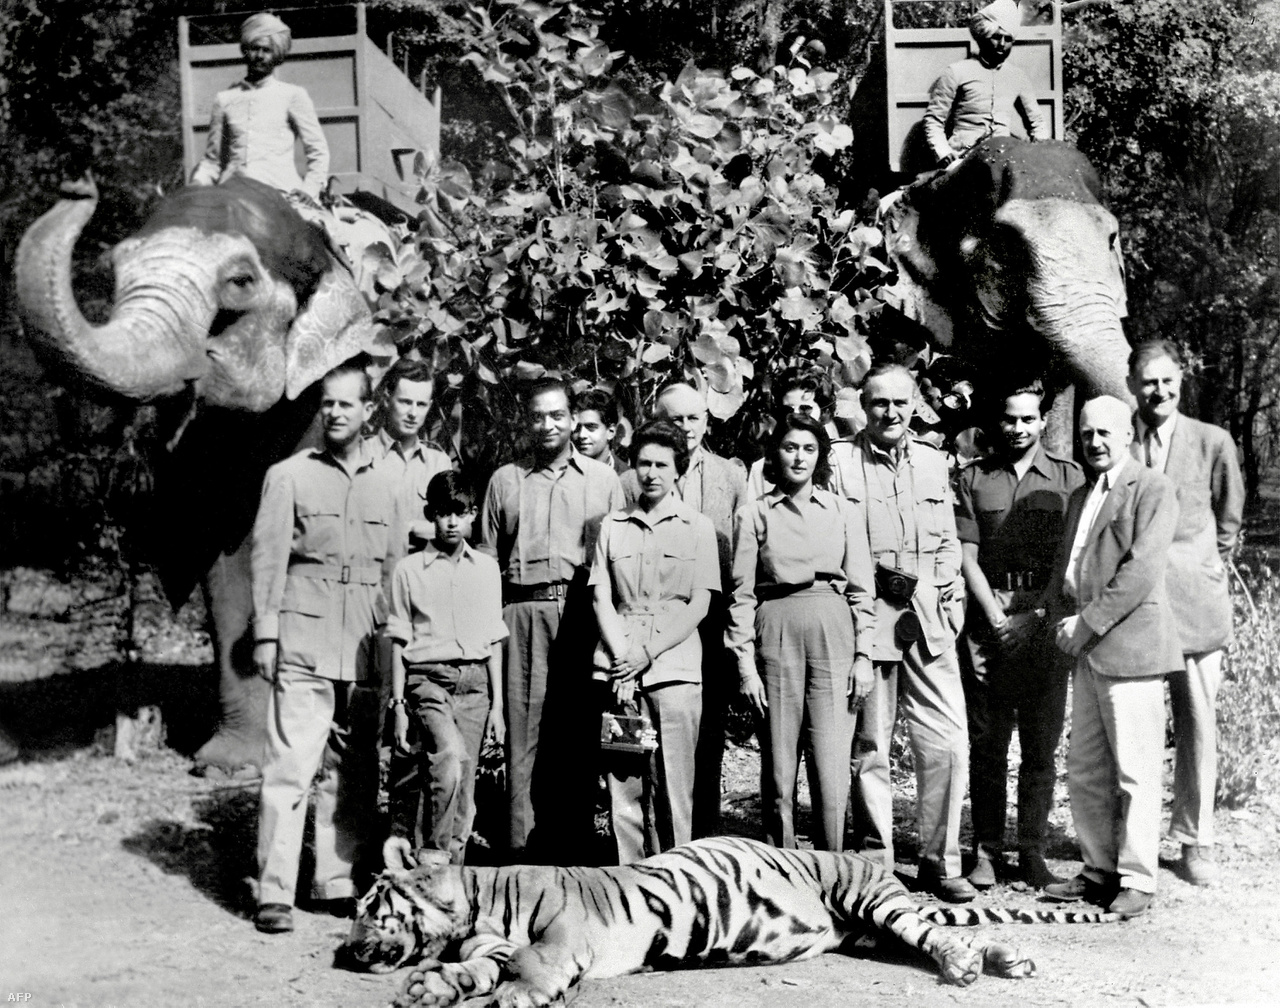 A királynő és férje 1961-es dzsaipuri látogatásán. A kép előterében fekvő tigrist Fülöp herceg lőtte le egy vadászaton.